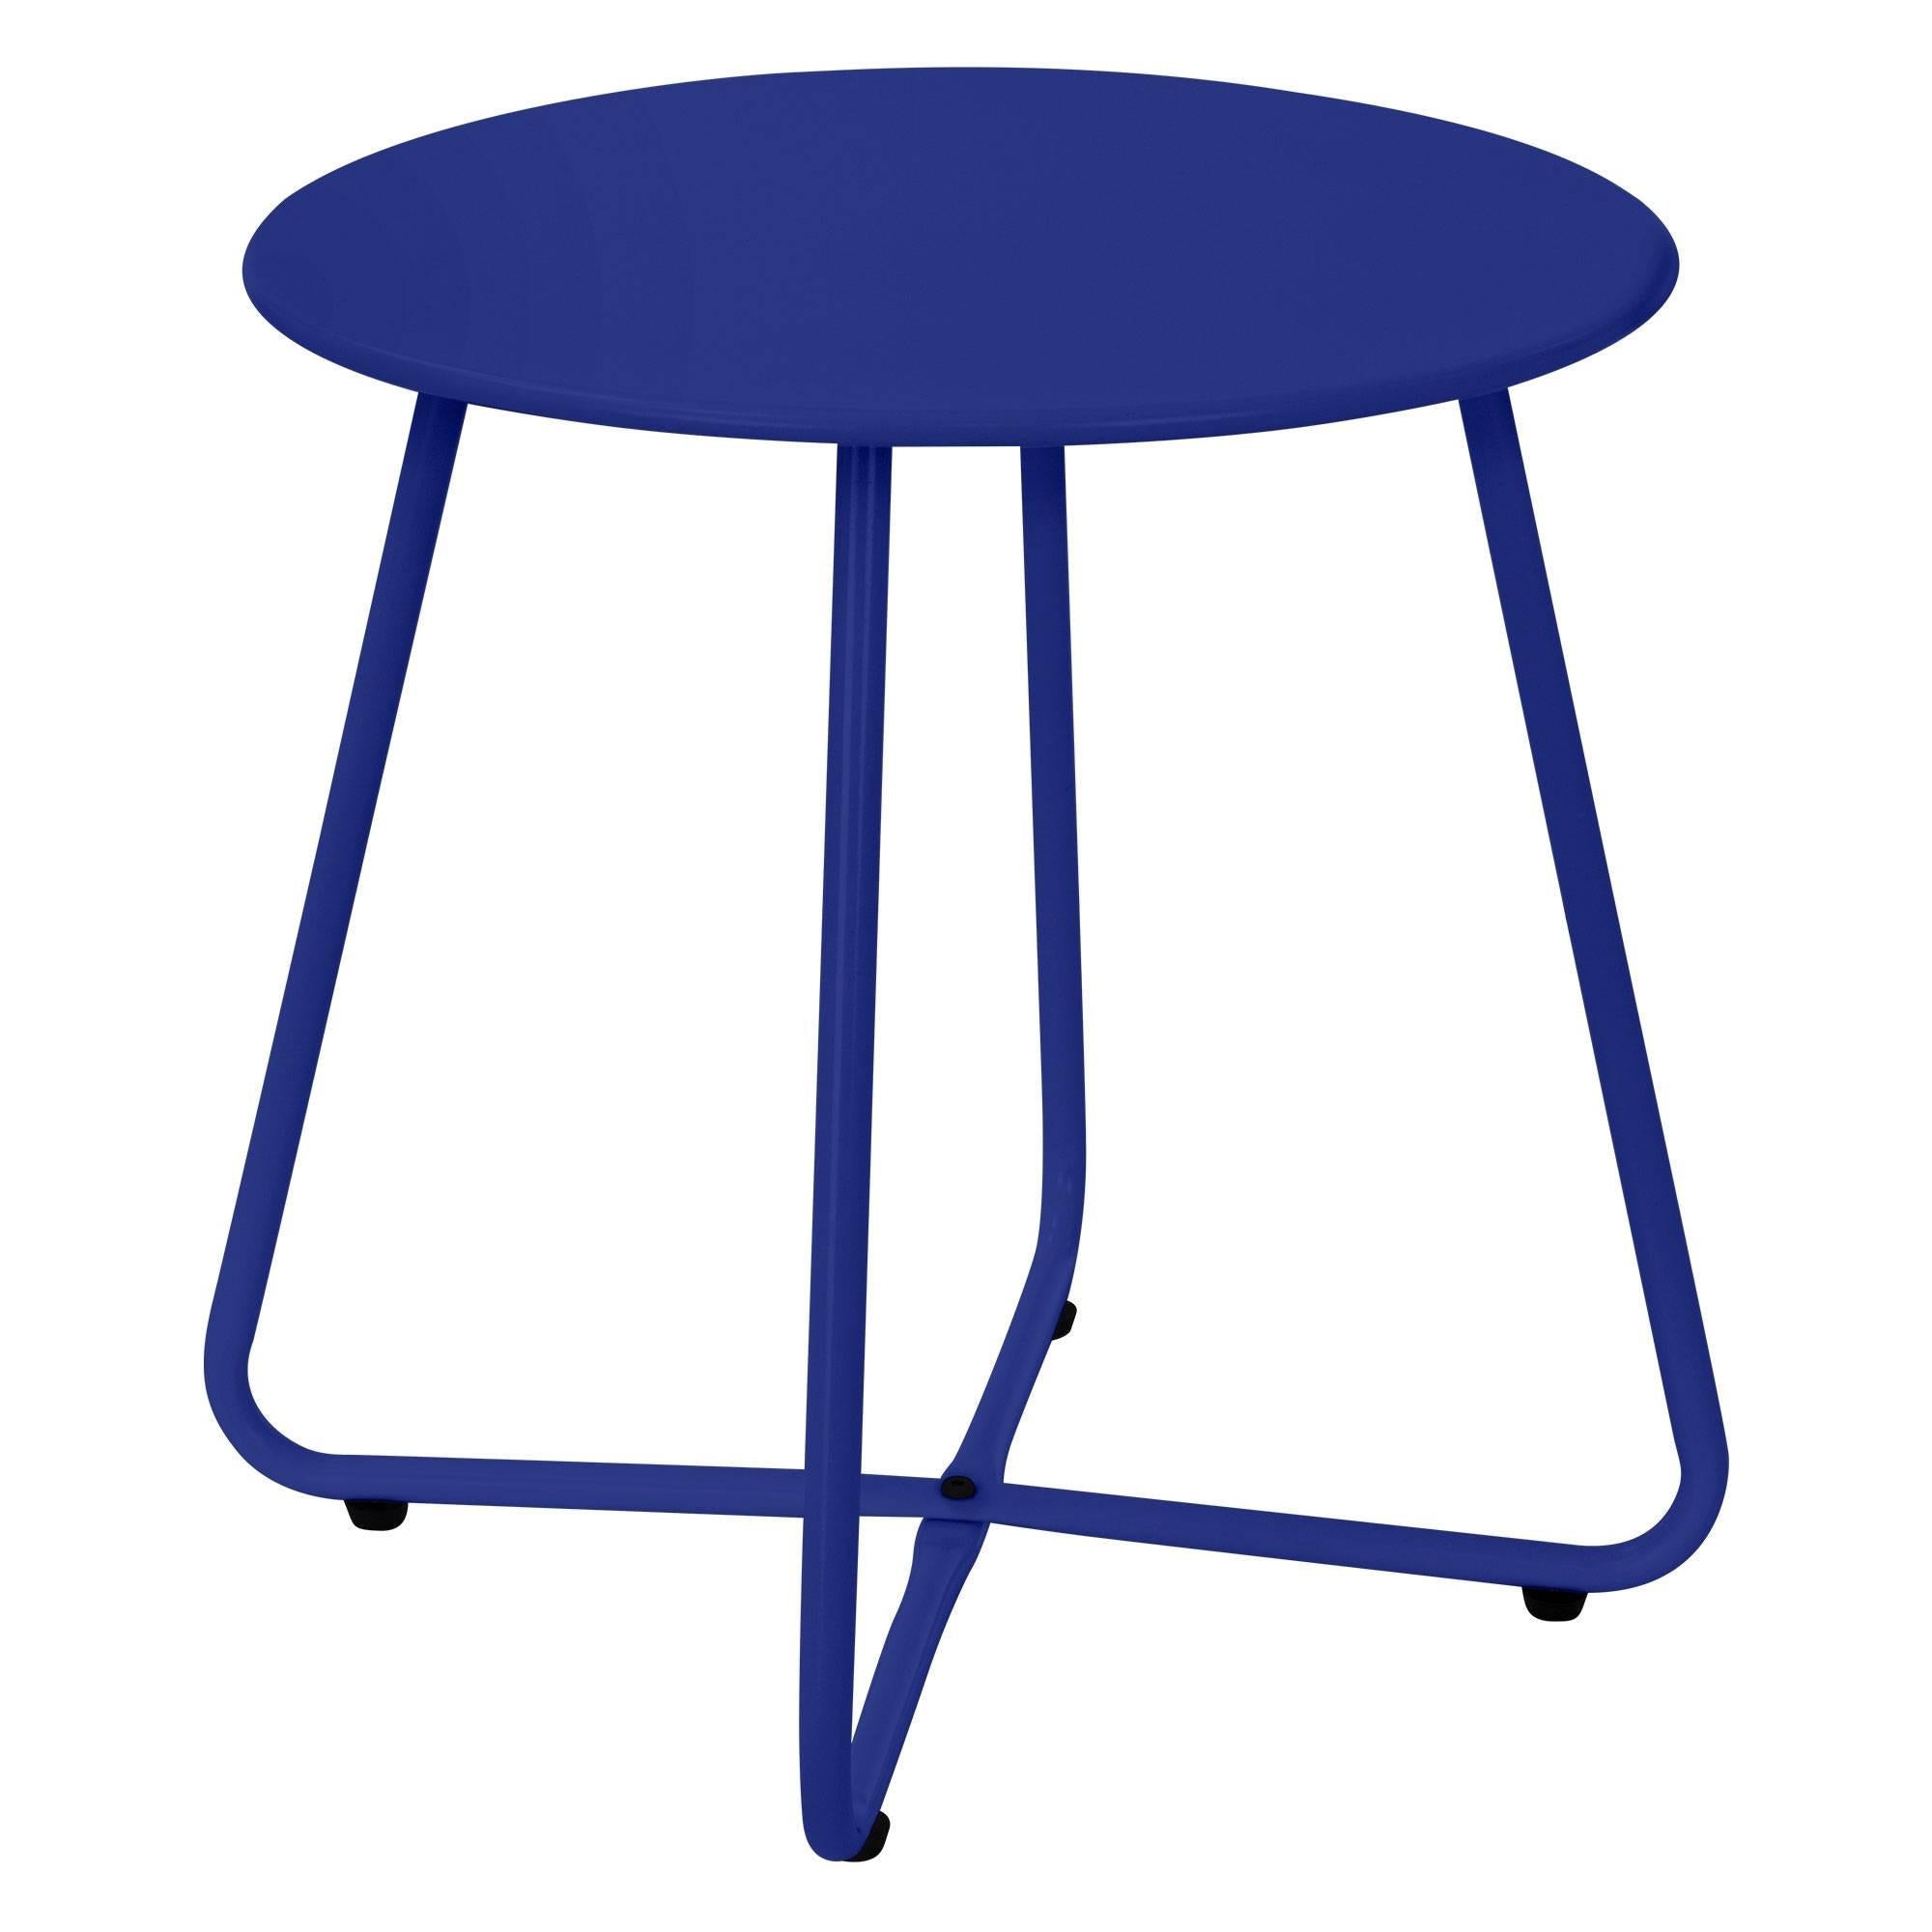 ml-design Kleiner Beistelltisch, 52x46 cm, Blau, aus Metall, Runder Kaffeetisch für Draußen, Sofatisch Wohnzimmertisch Couchtisch Nachttisch Gartentisch